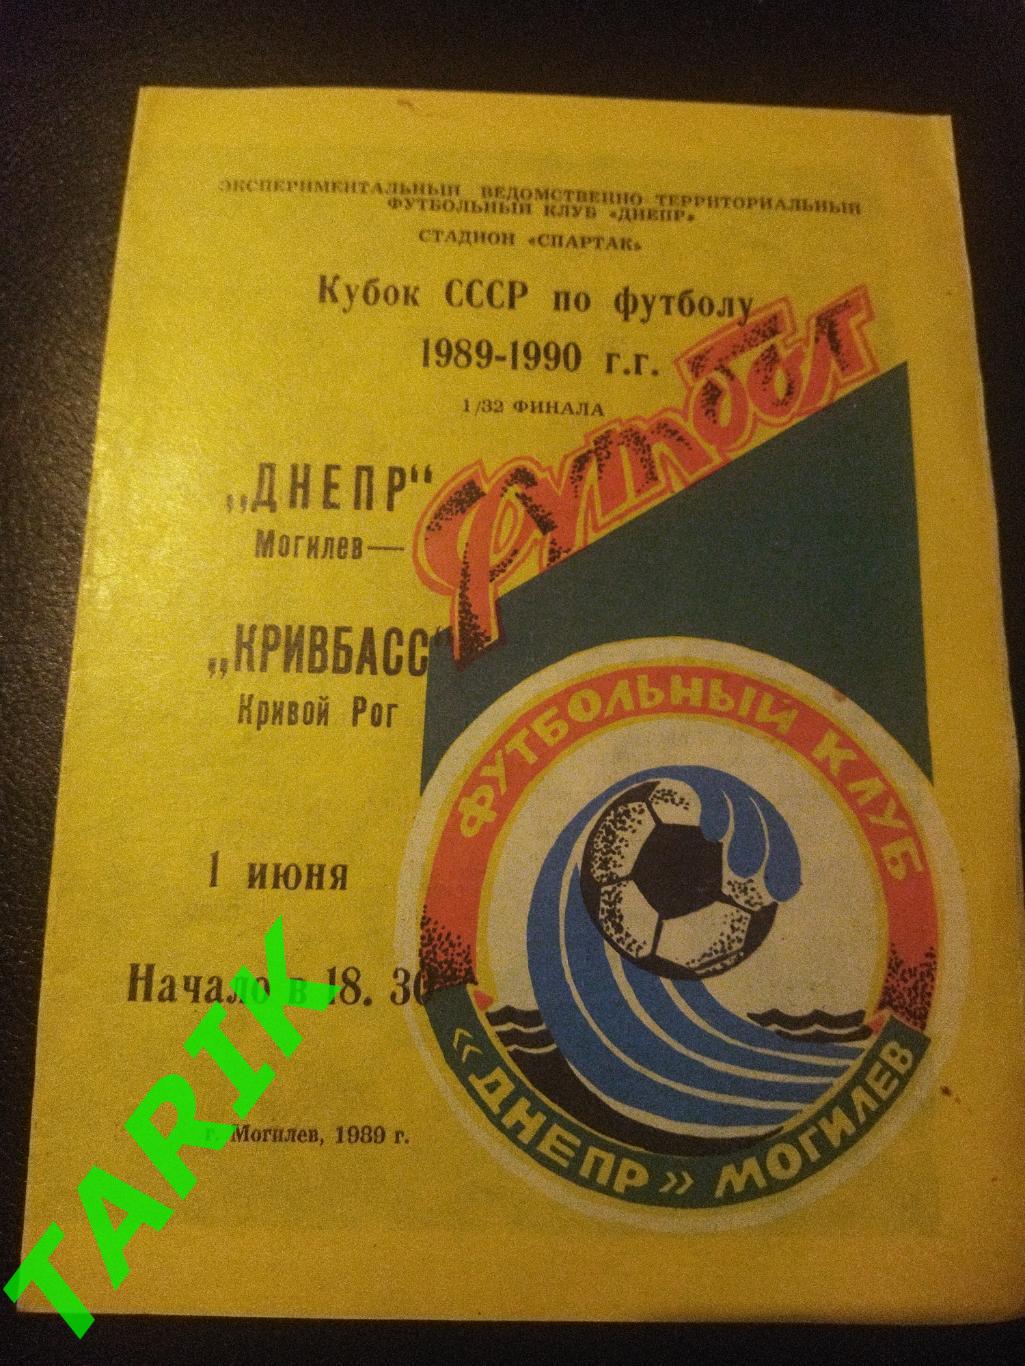 Днепр Могилев - Кривбасс Кривой Рог 1989 Кубок СССР